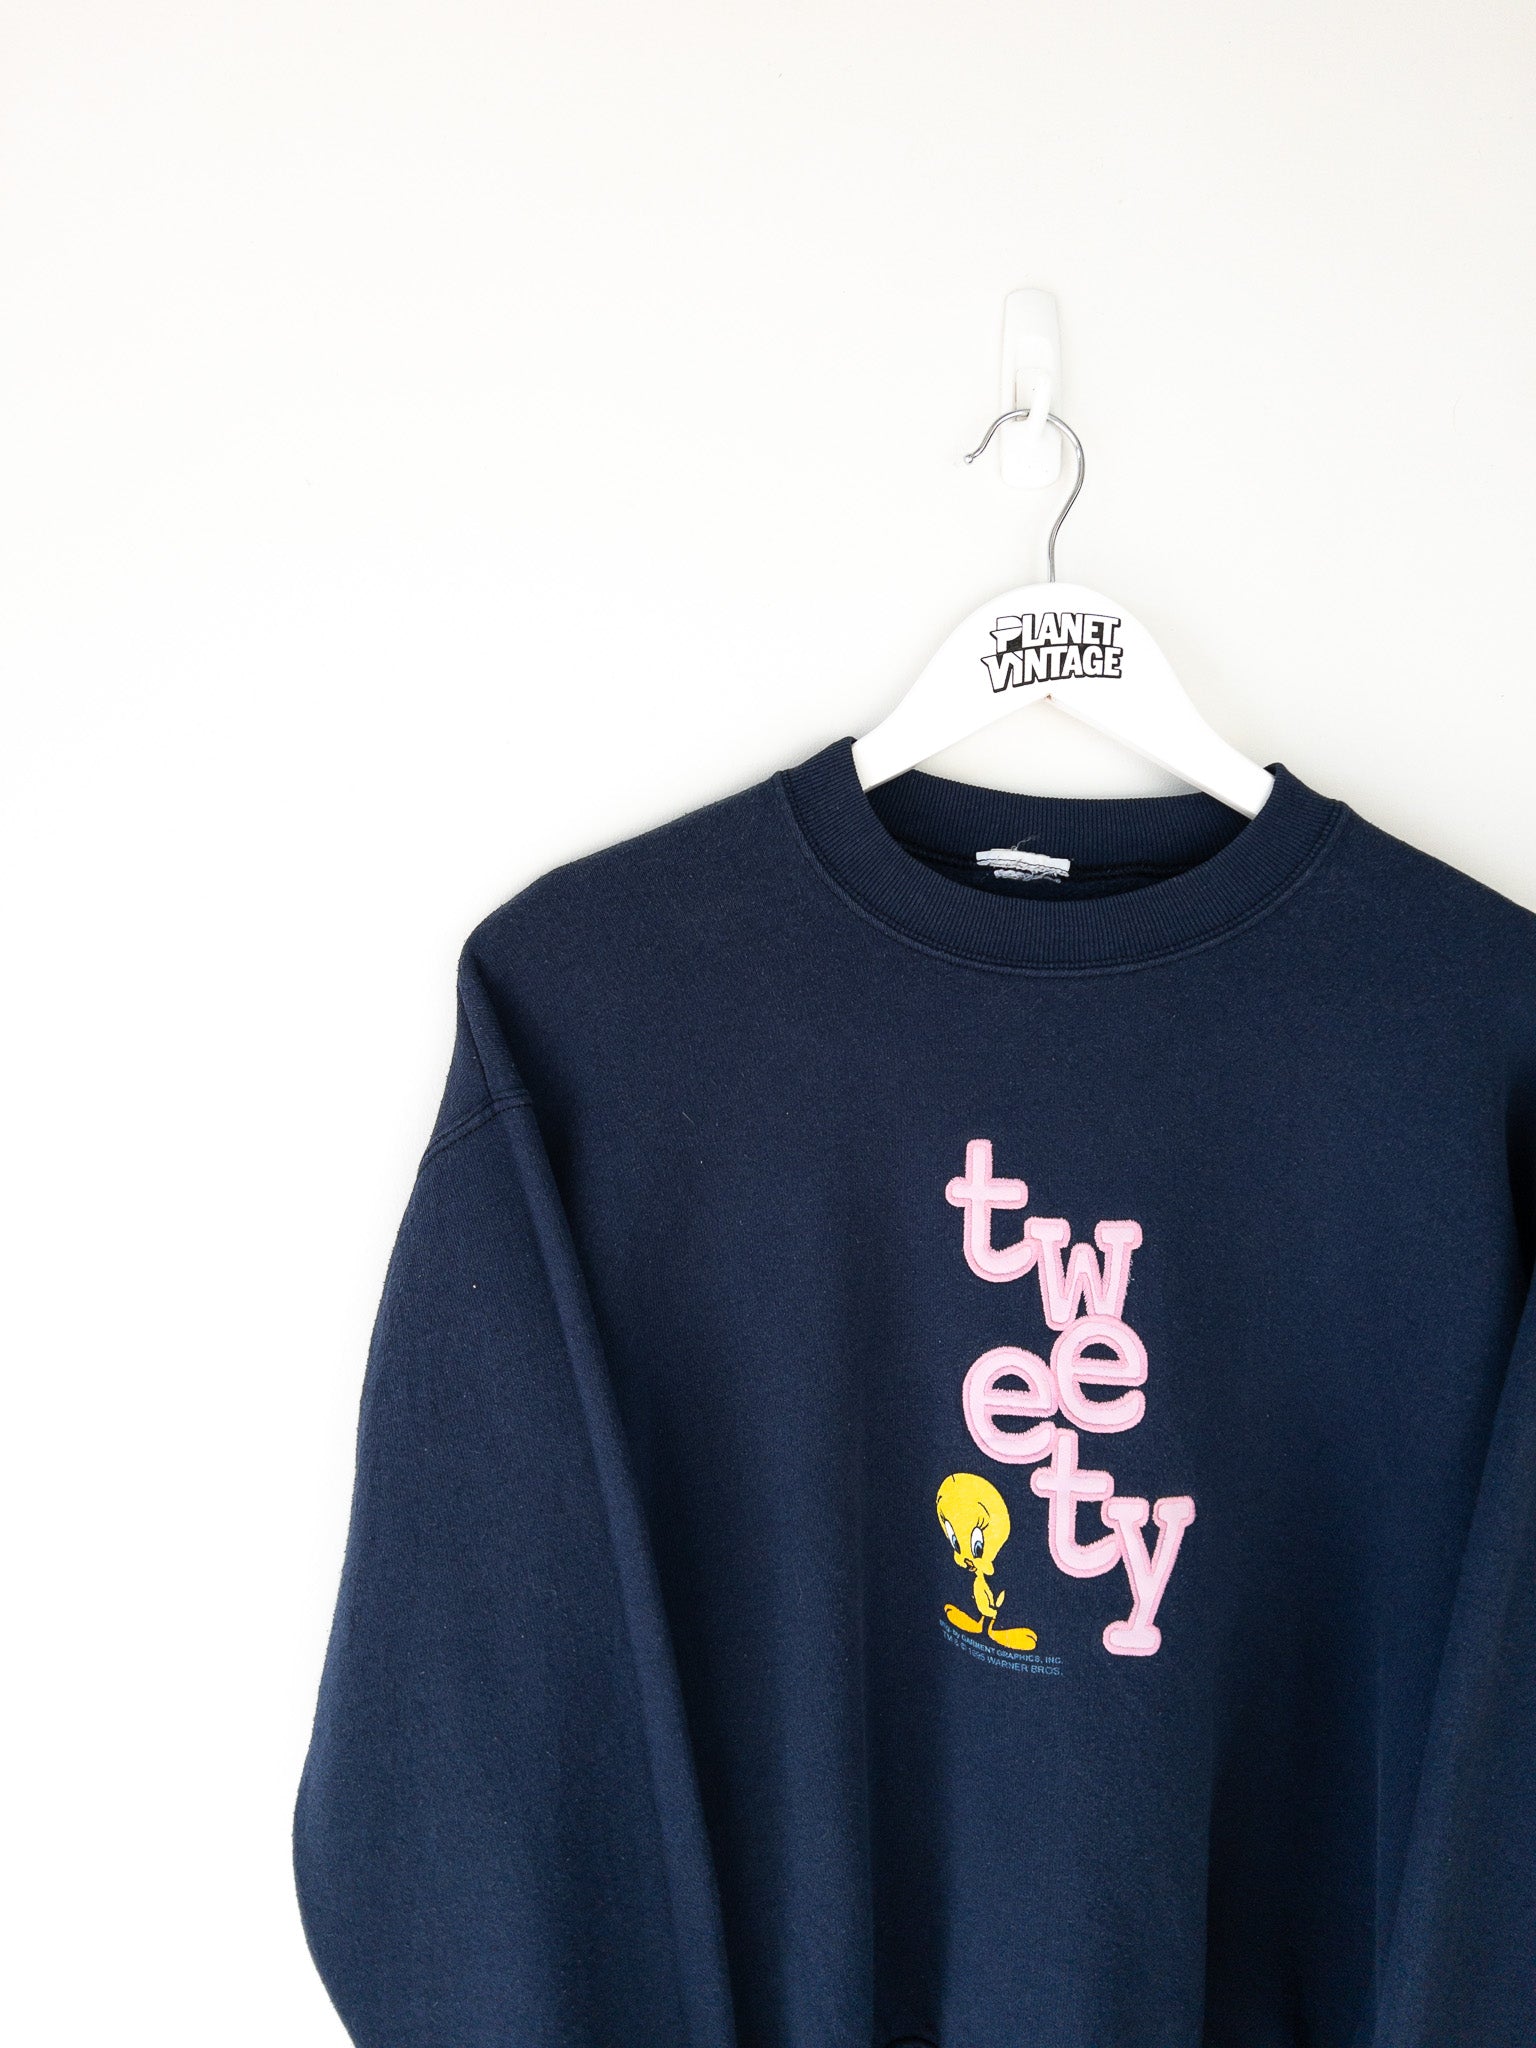 Vintage Tweety 1995 Sweatshirt (S)